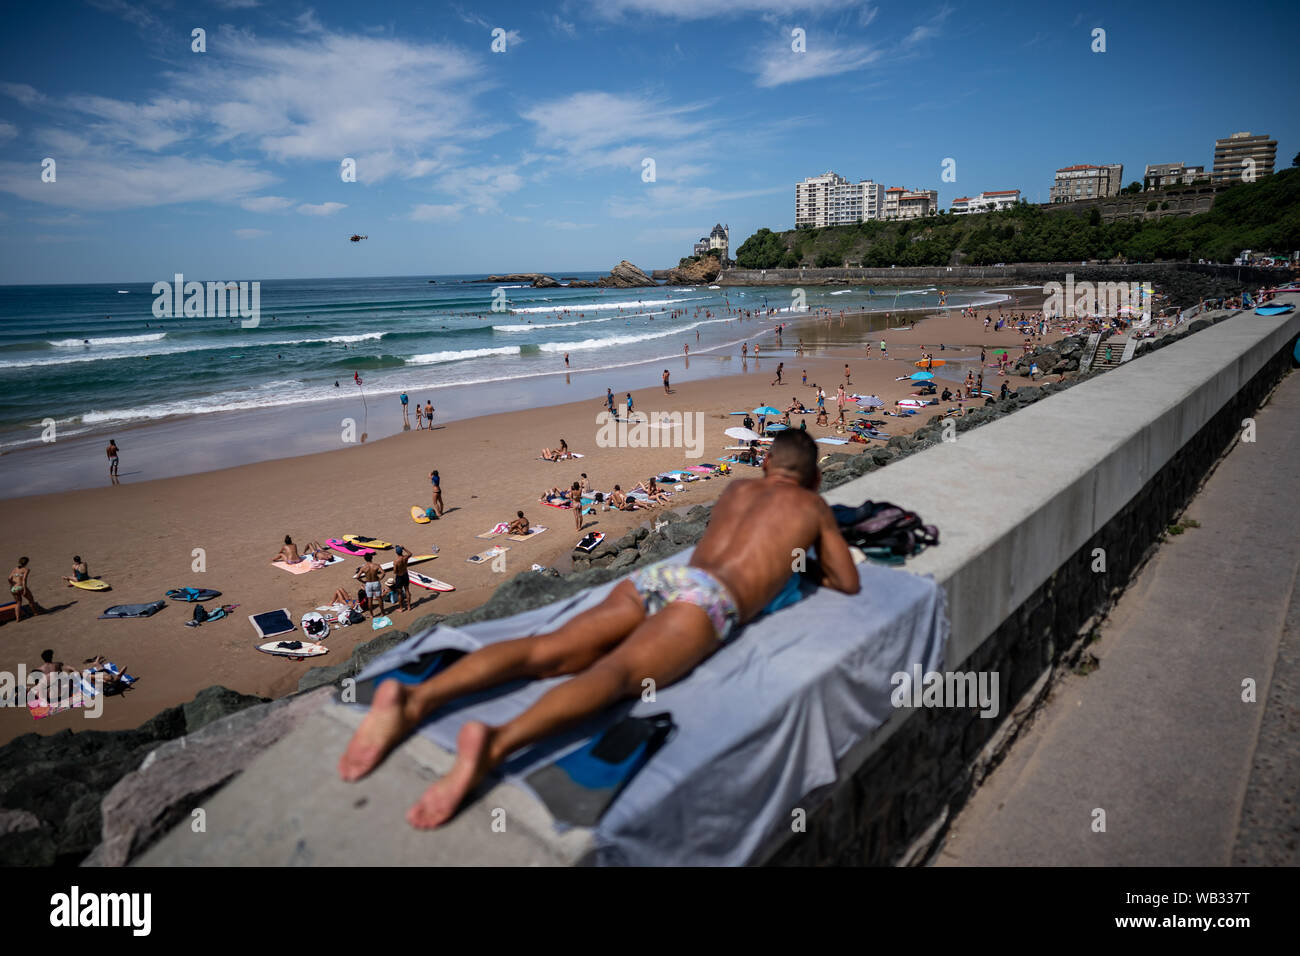 23 août 2019, la France (France), Biarritz : un homme en train de bronzer sur la plage de Biarritz. Le sommet du G7 aura lieu du 24 au 26 août à Biarritz. Photo : Michael Kappeler/dpa Banque D'Images